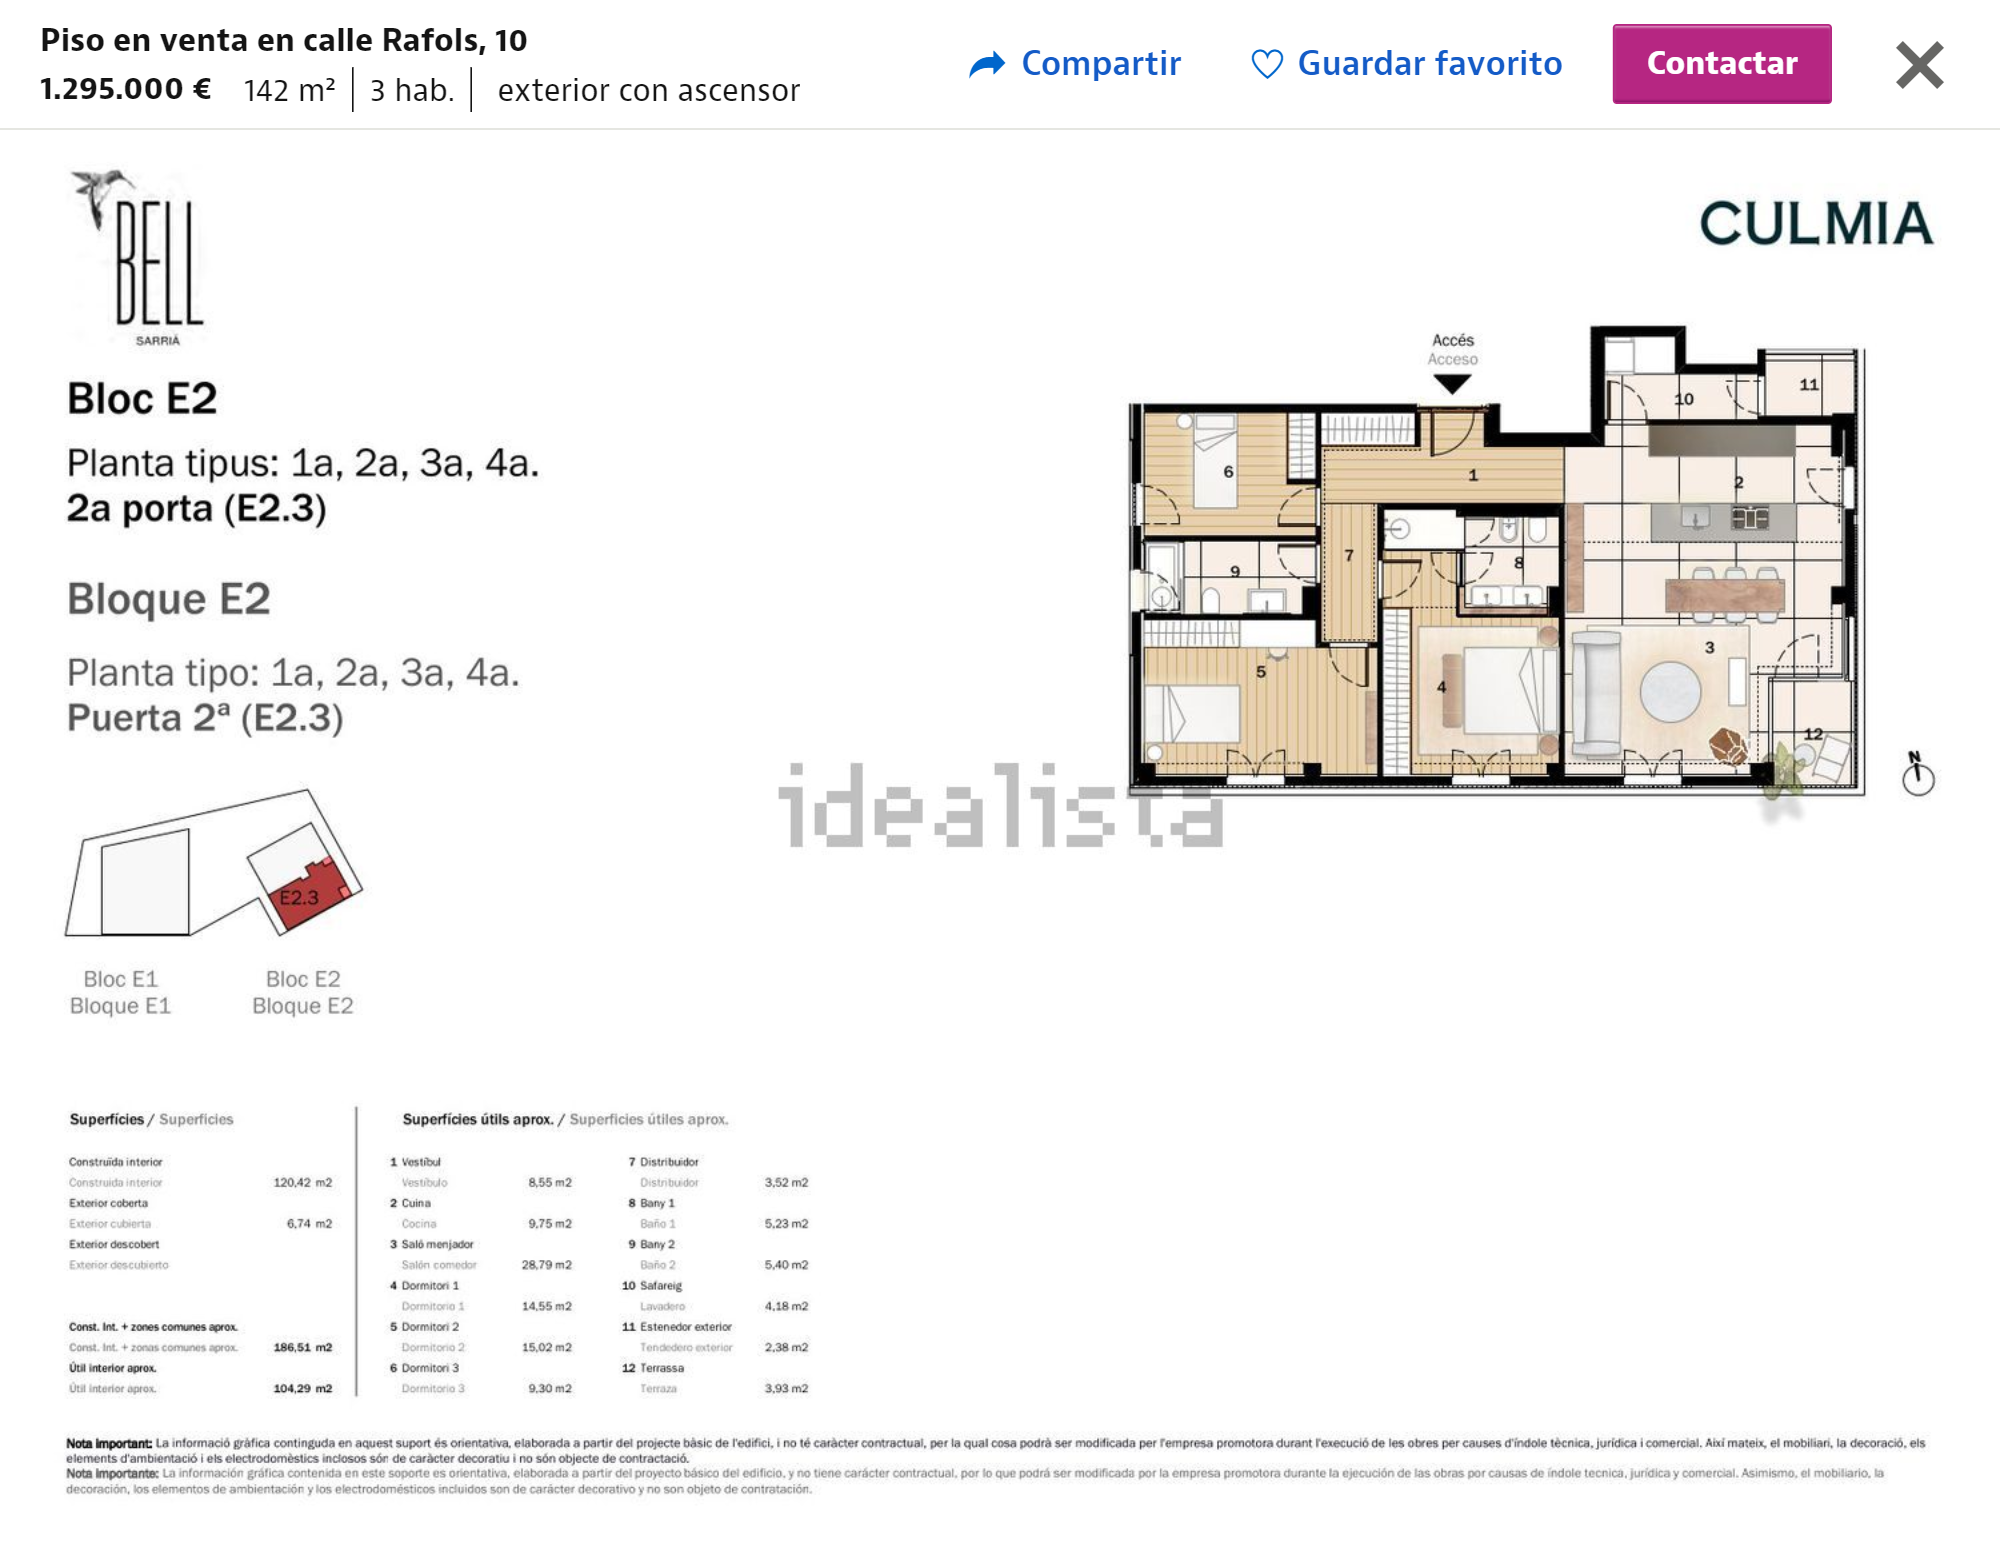 Вот она — квартира за 1 295 000 €. Не забудьте прибавить к стоимости еще 10% налога. Будь у меня такие деньги, я бы точно покупала квартиру не в Барселоне. Источник: idealista.com